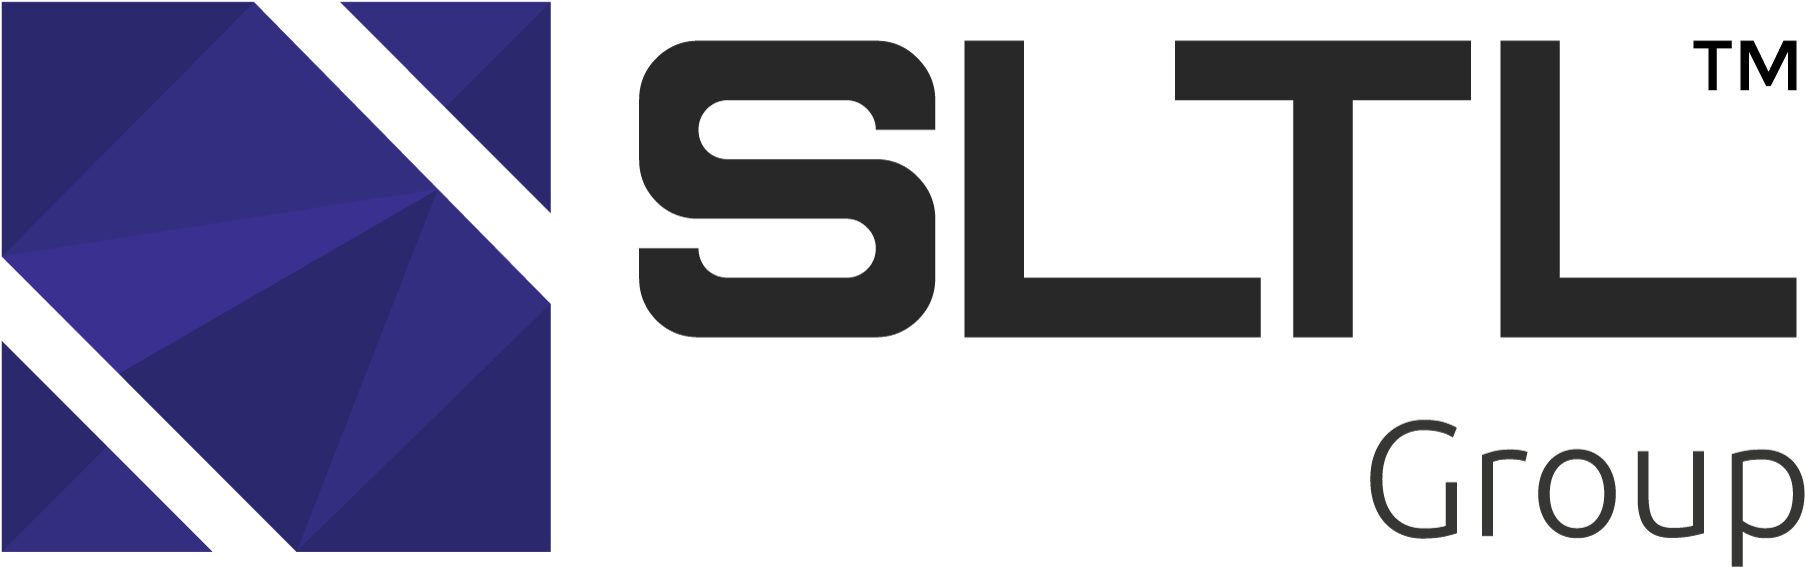 Sltl Is Cnc Engraving Machine Manufacturer And Supplier - Logo Of Sahajanand Laser Technology Ltd Sltl (2000x735)